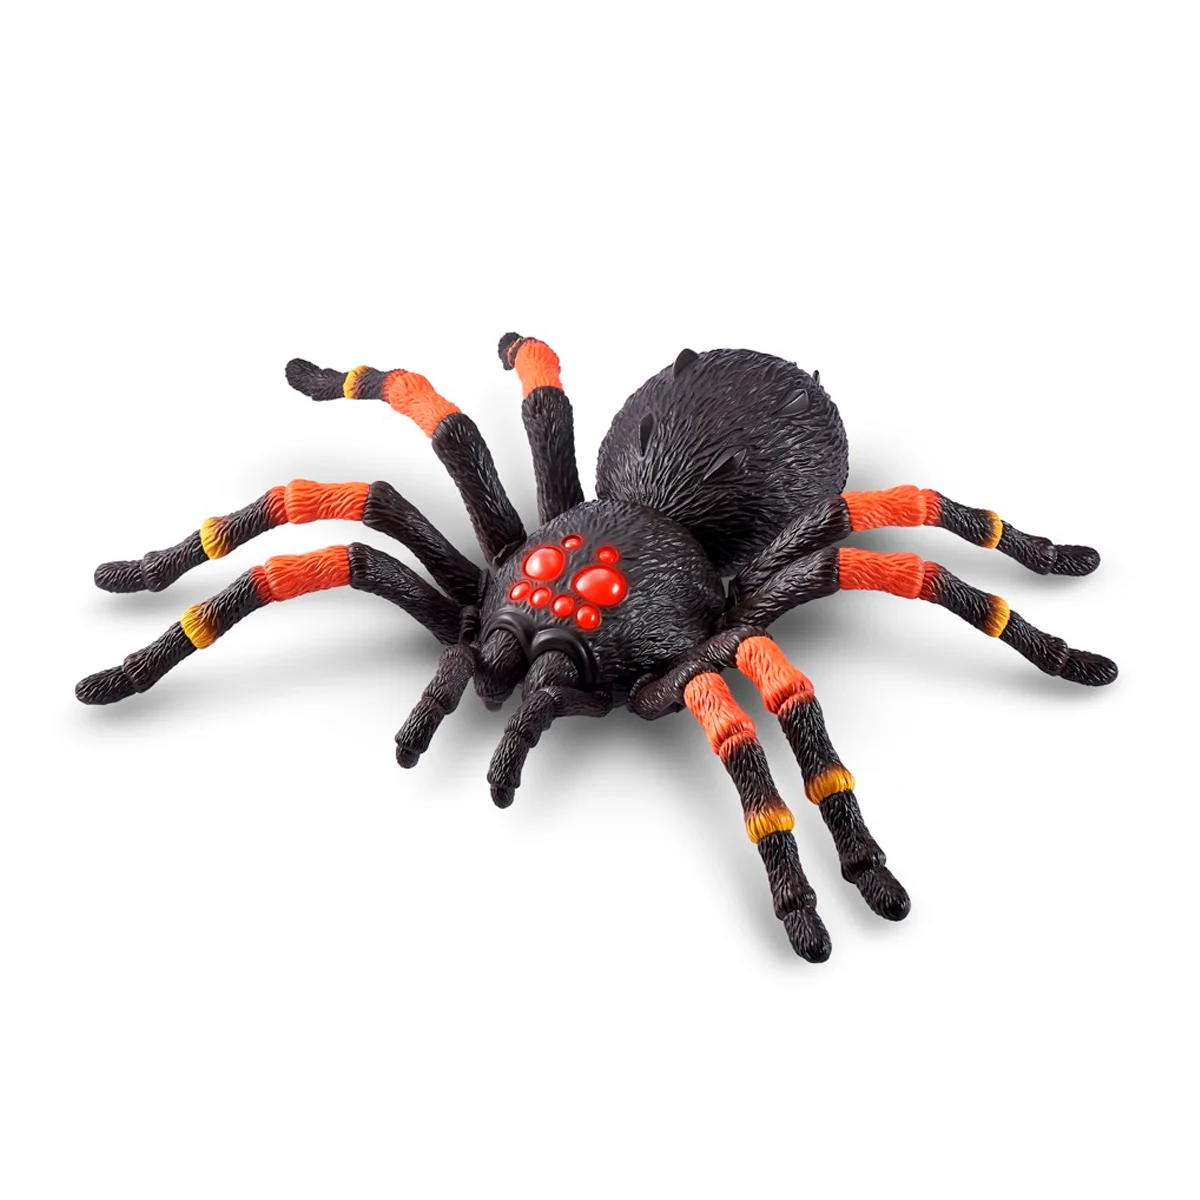 Robo edderkop - Køb online til kun 199.95